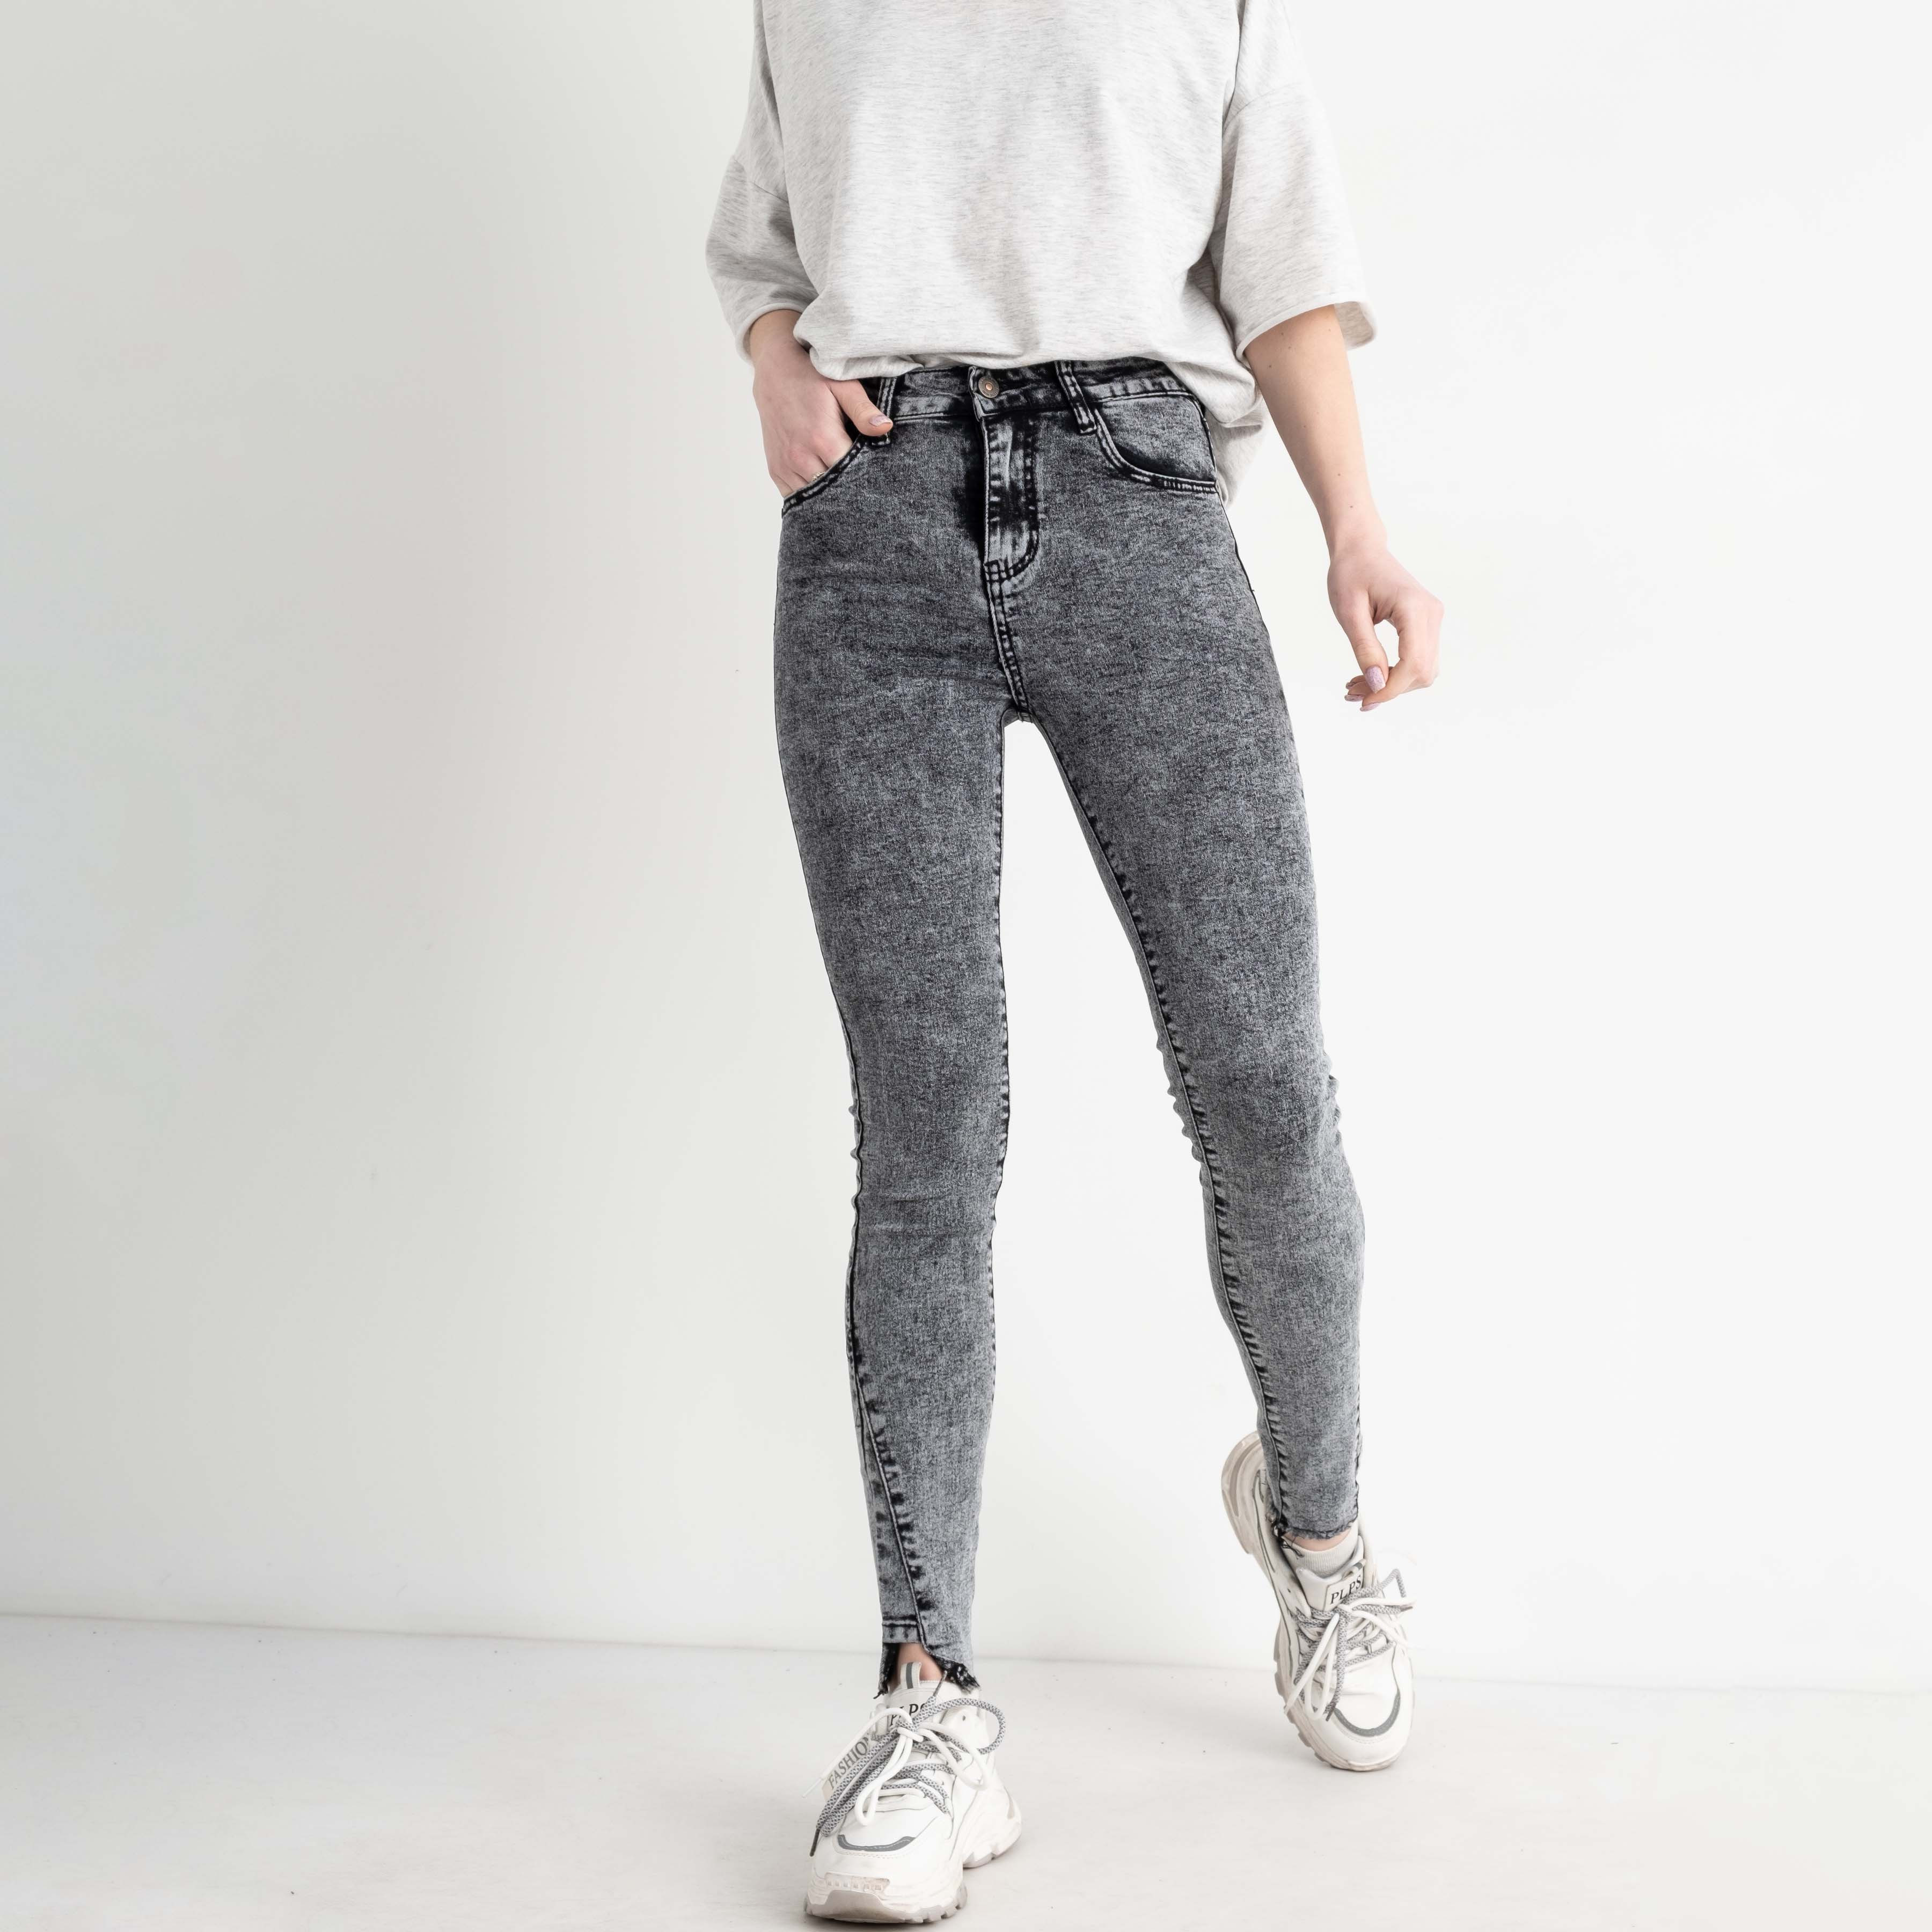 0068 New Jeans американка женская серая стрейчевая ( 6 ед.размеры: 25.26.27.28.29.30)